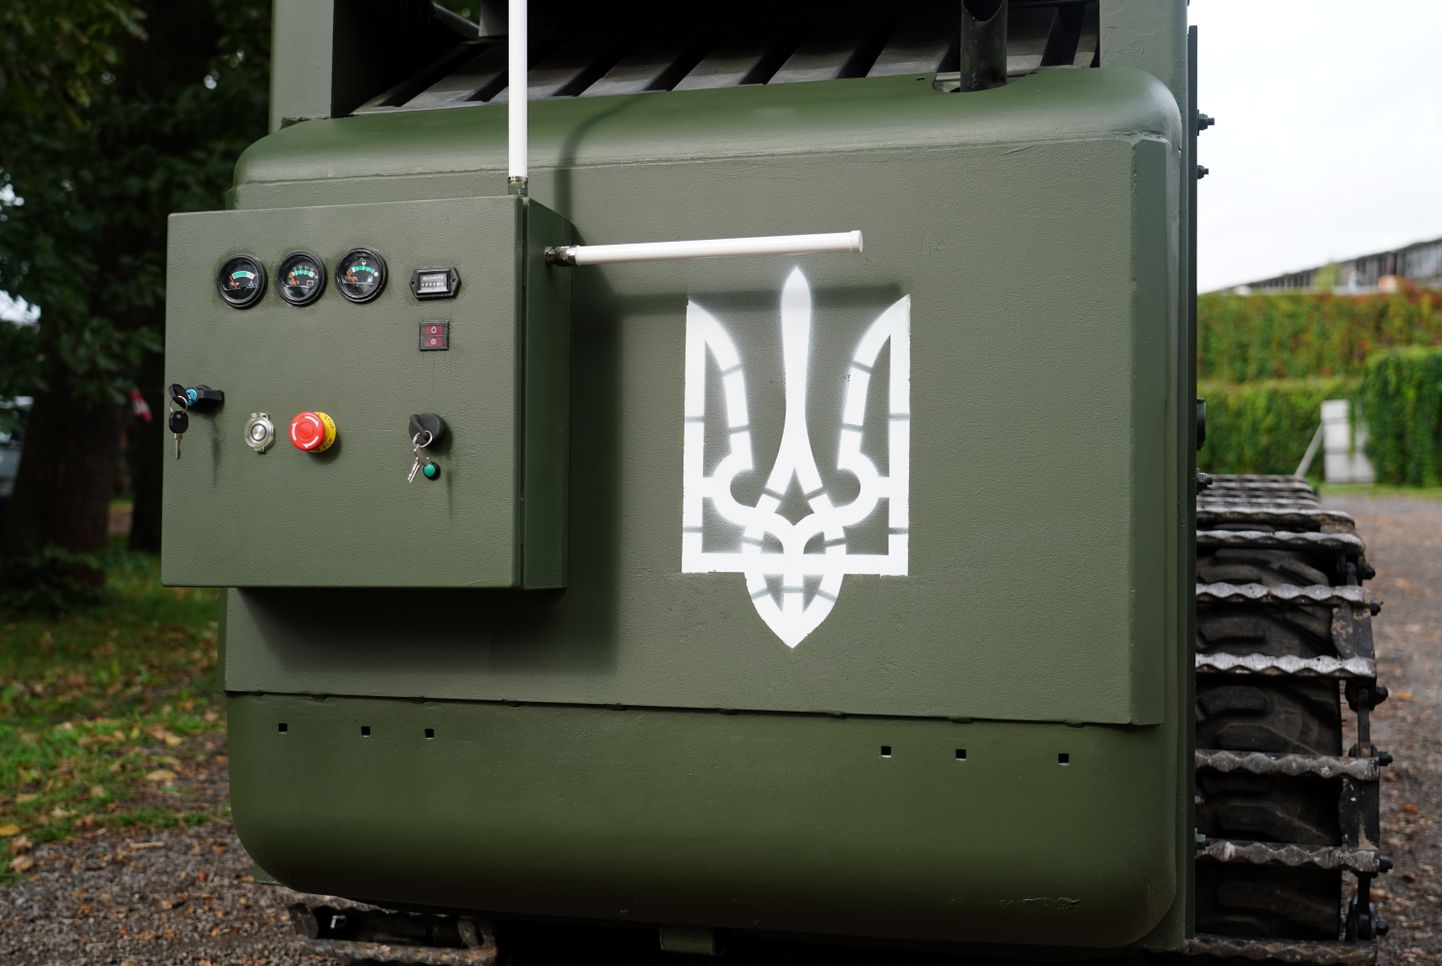 Latvijā ražotais atmīnēšanas robots "LABAIS" "Ziedot.lv" kampaņas "Labas ziņas" pasākuma laikā, kuru par saziedotajiem līdzekļiem nosūtīs Ukrainas armijai.